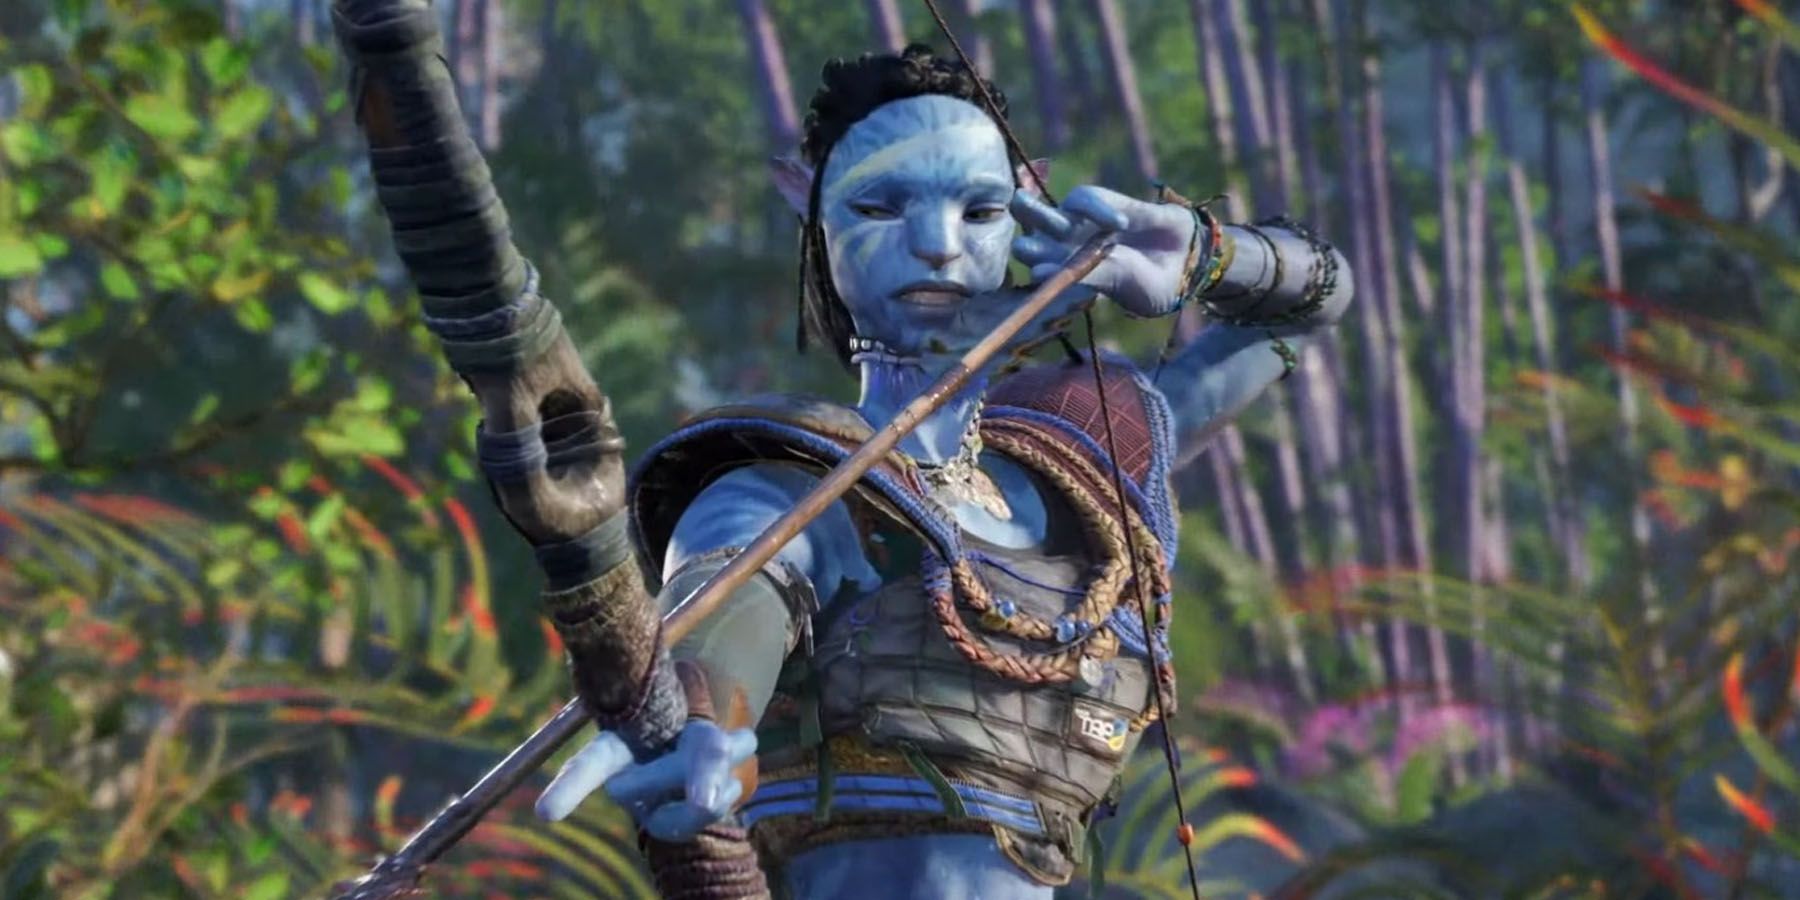 Captura de tela de um guerreiro Na'vi desenhando um arco em Avatar: Pandora Frontier.